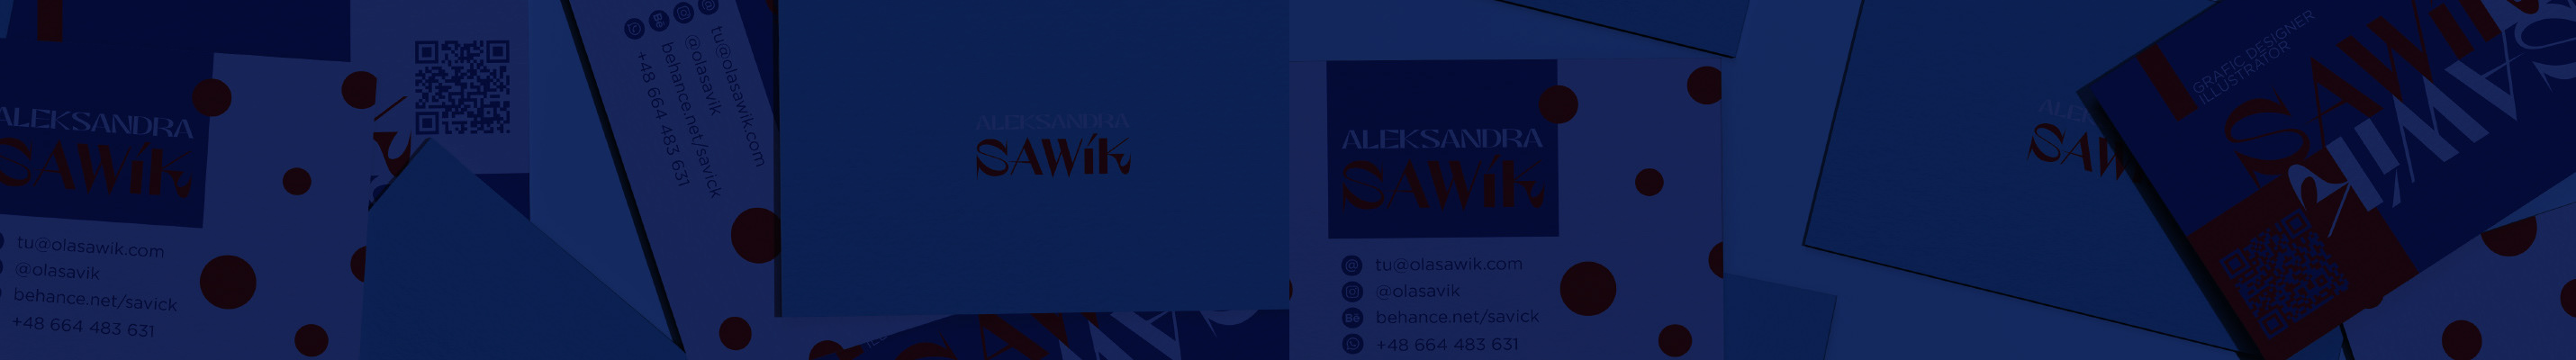 Aleksandra Sawik 的個人檔案橫幅